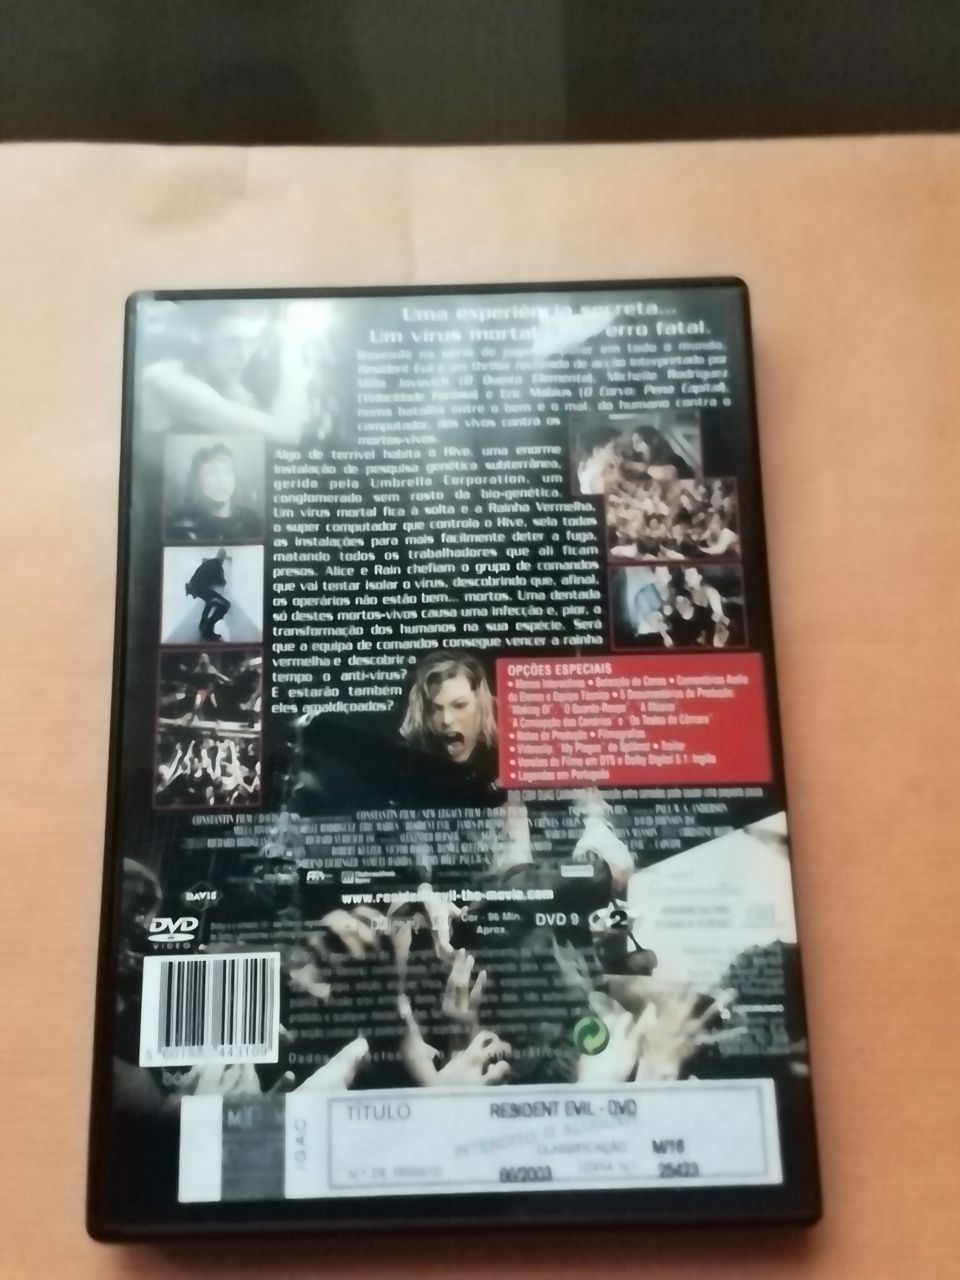 DVD Resident Evil, novo